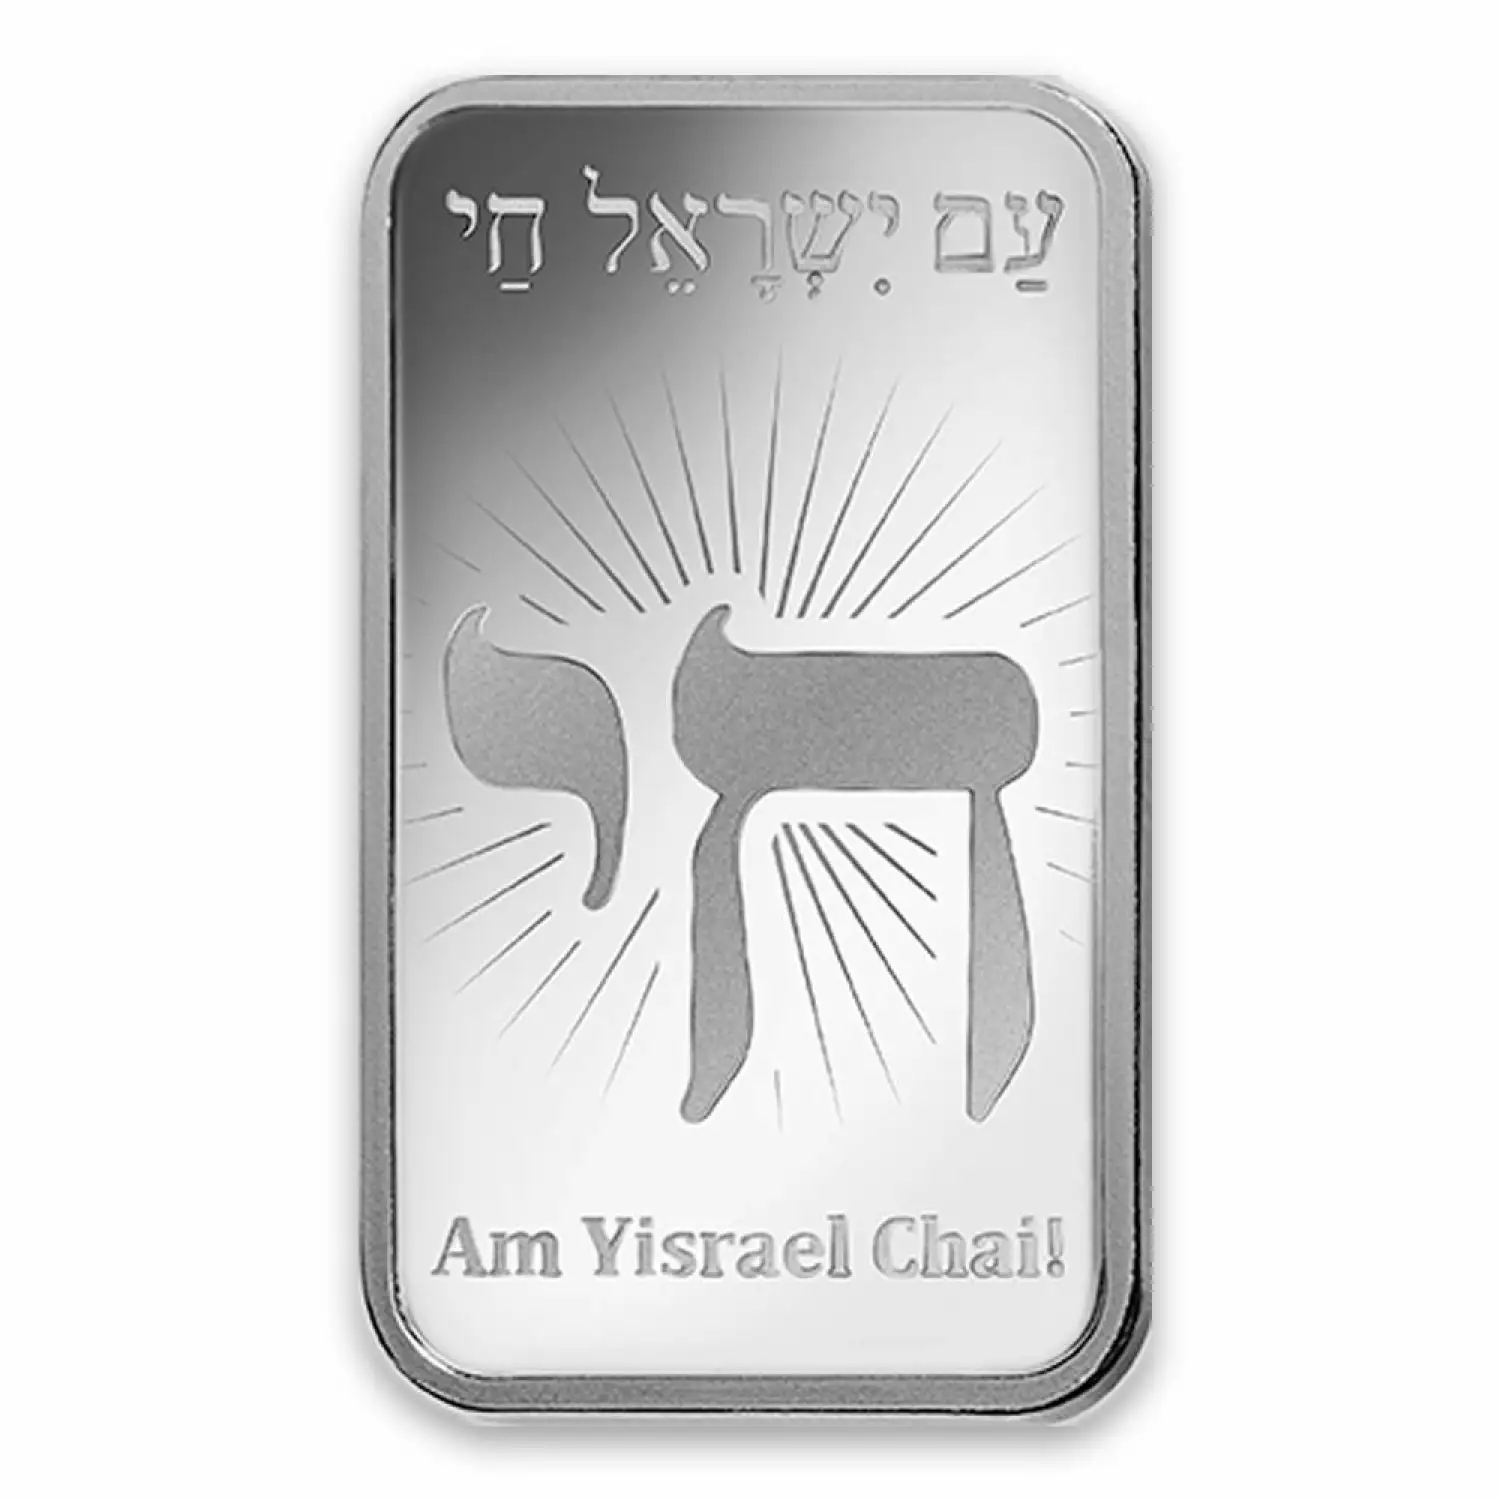 50g PAMP Silver Bar - Am Yisrael Chai! (2)